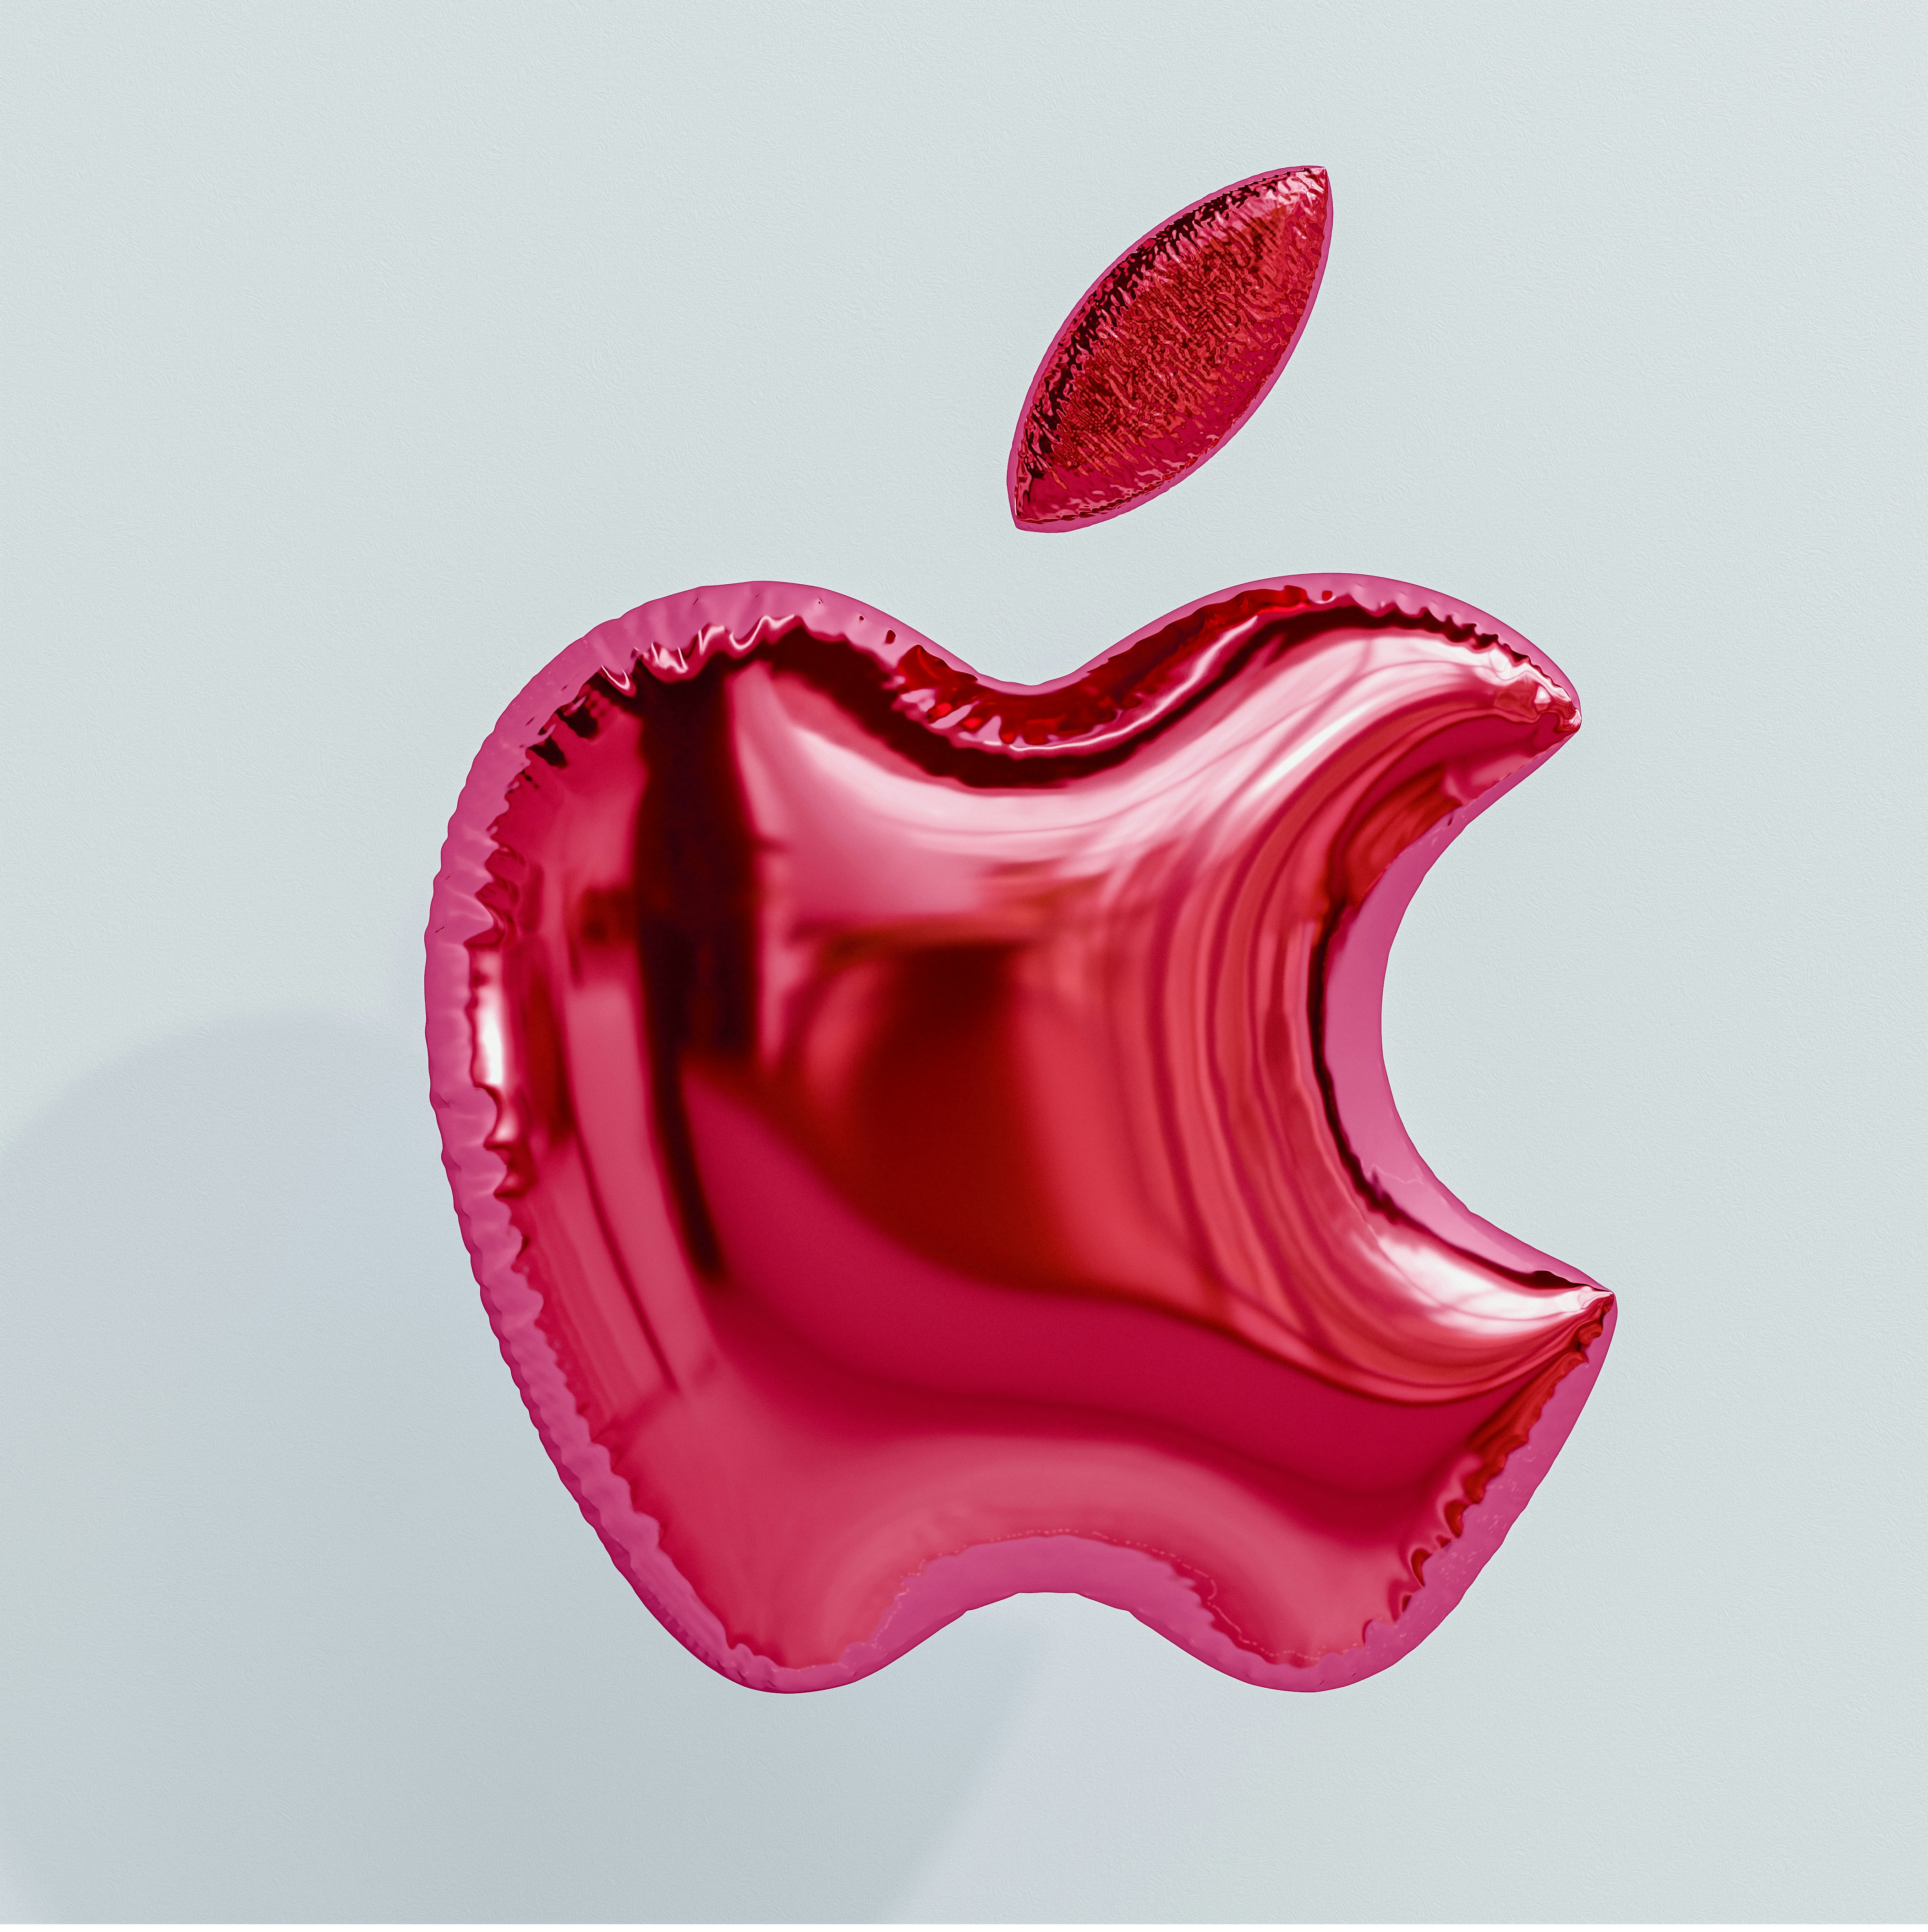 Apple logo balloon on a white background